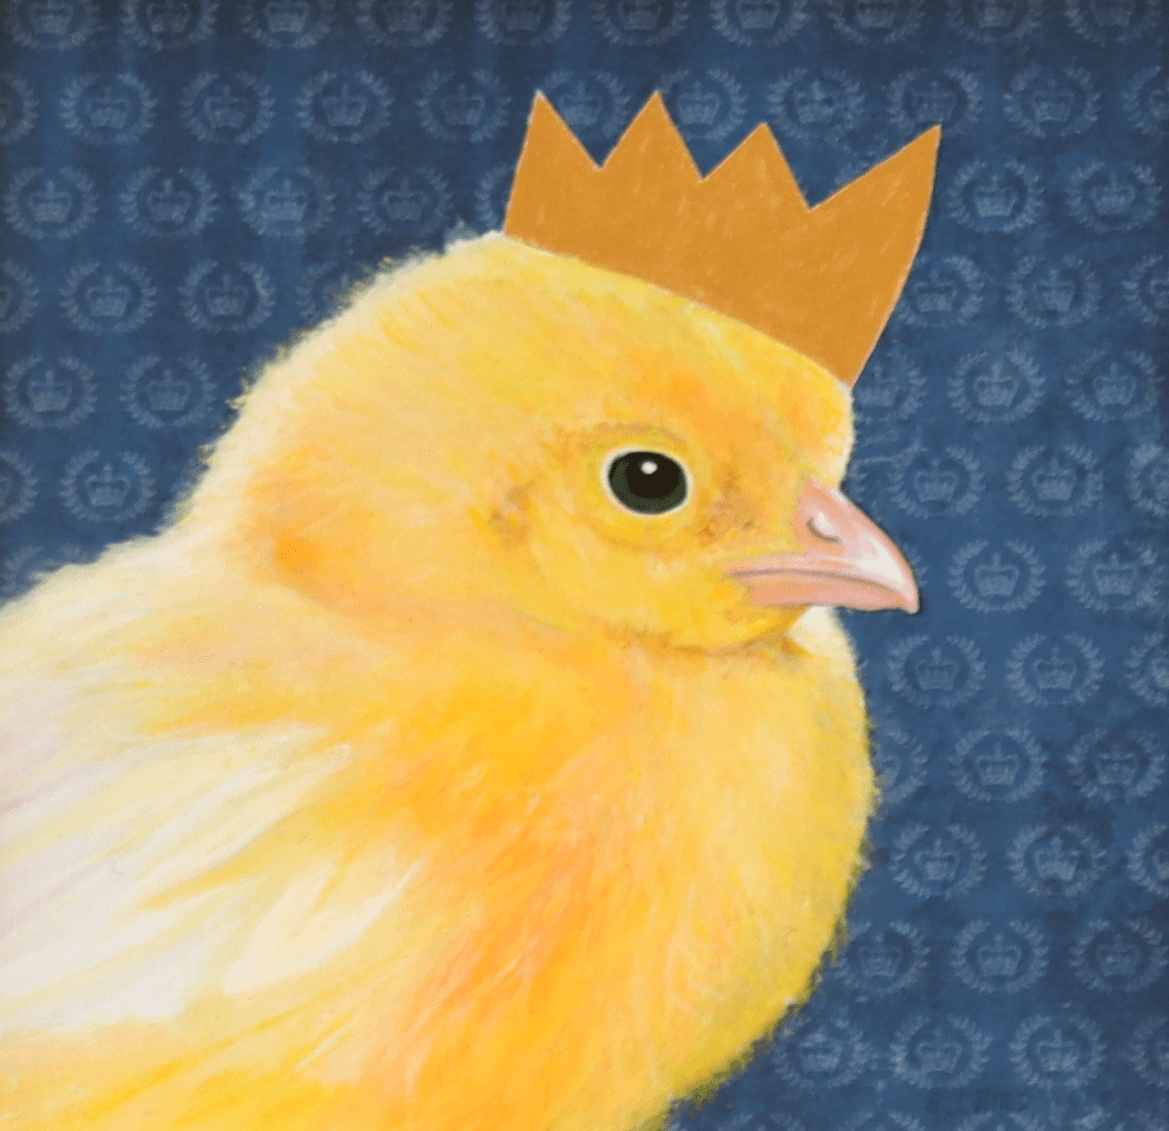 Stanley_Bird_Coronation_Chicken-min